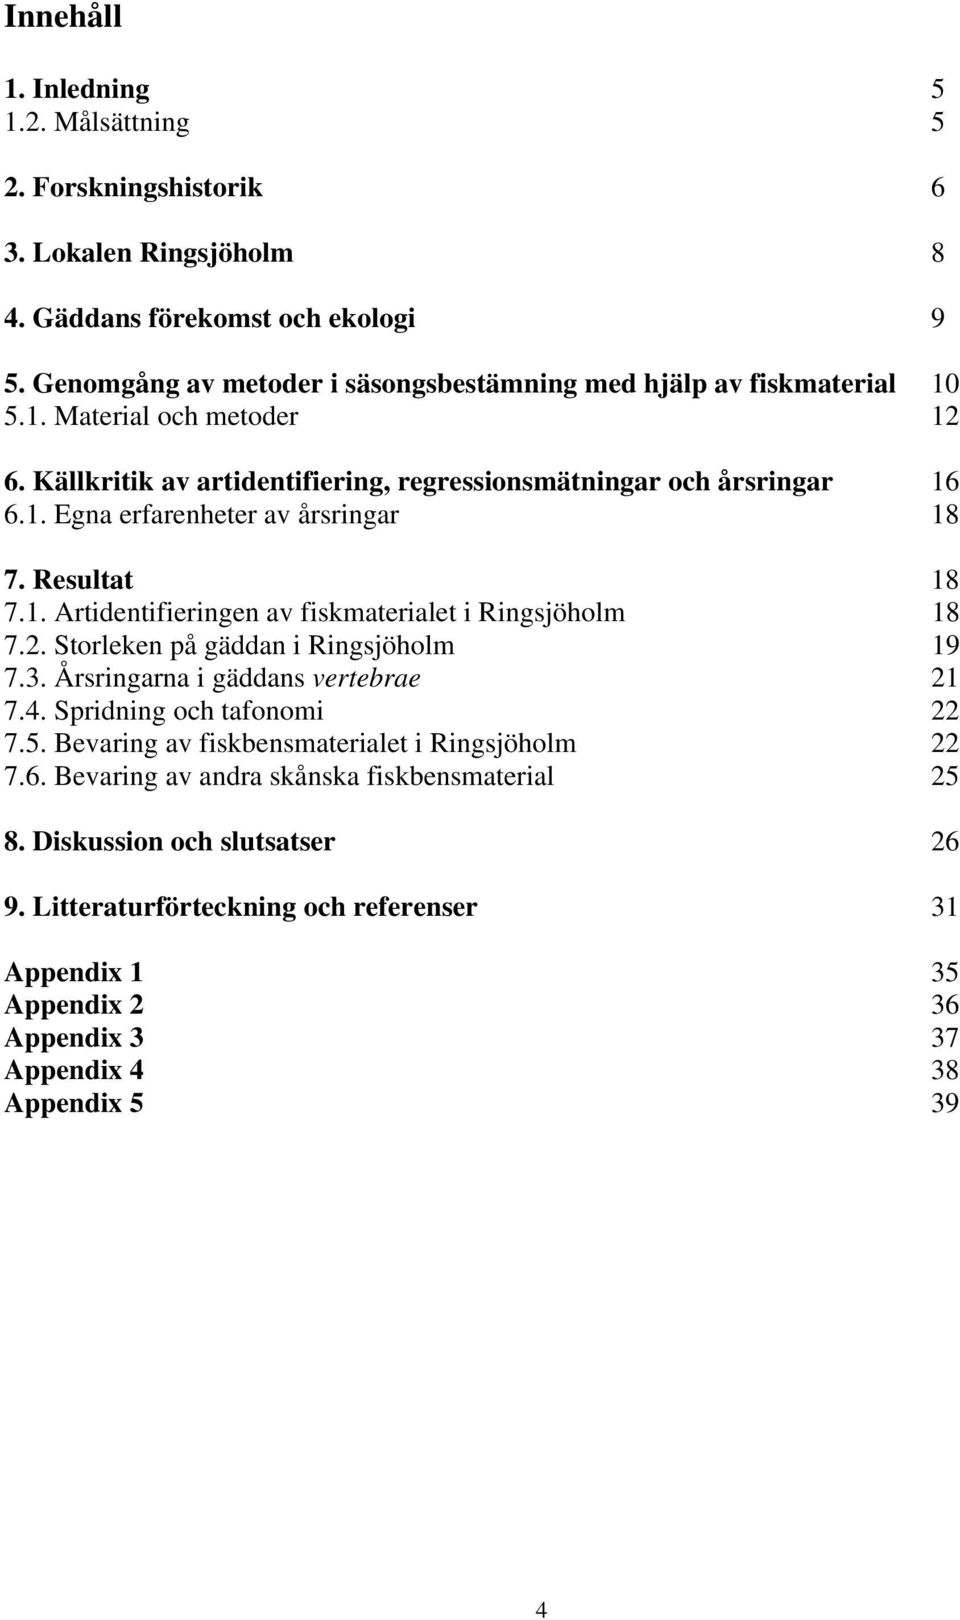 Resultat 18 7.1. Artidentifieringen av fiskmaterialet i Ringsjöholm 18 7.2. Storleken på gäddan i Ringsjöholm 19 7.3. Årsringarna i gäddans vertebrae 21 7.4. Spridning och tafonomi 22 7.5.